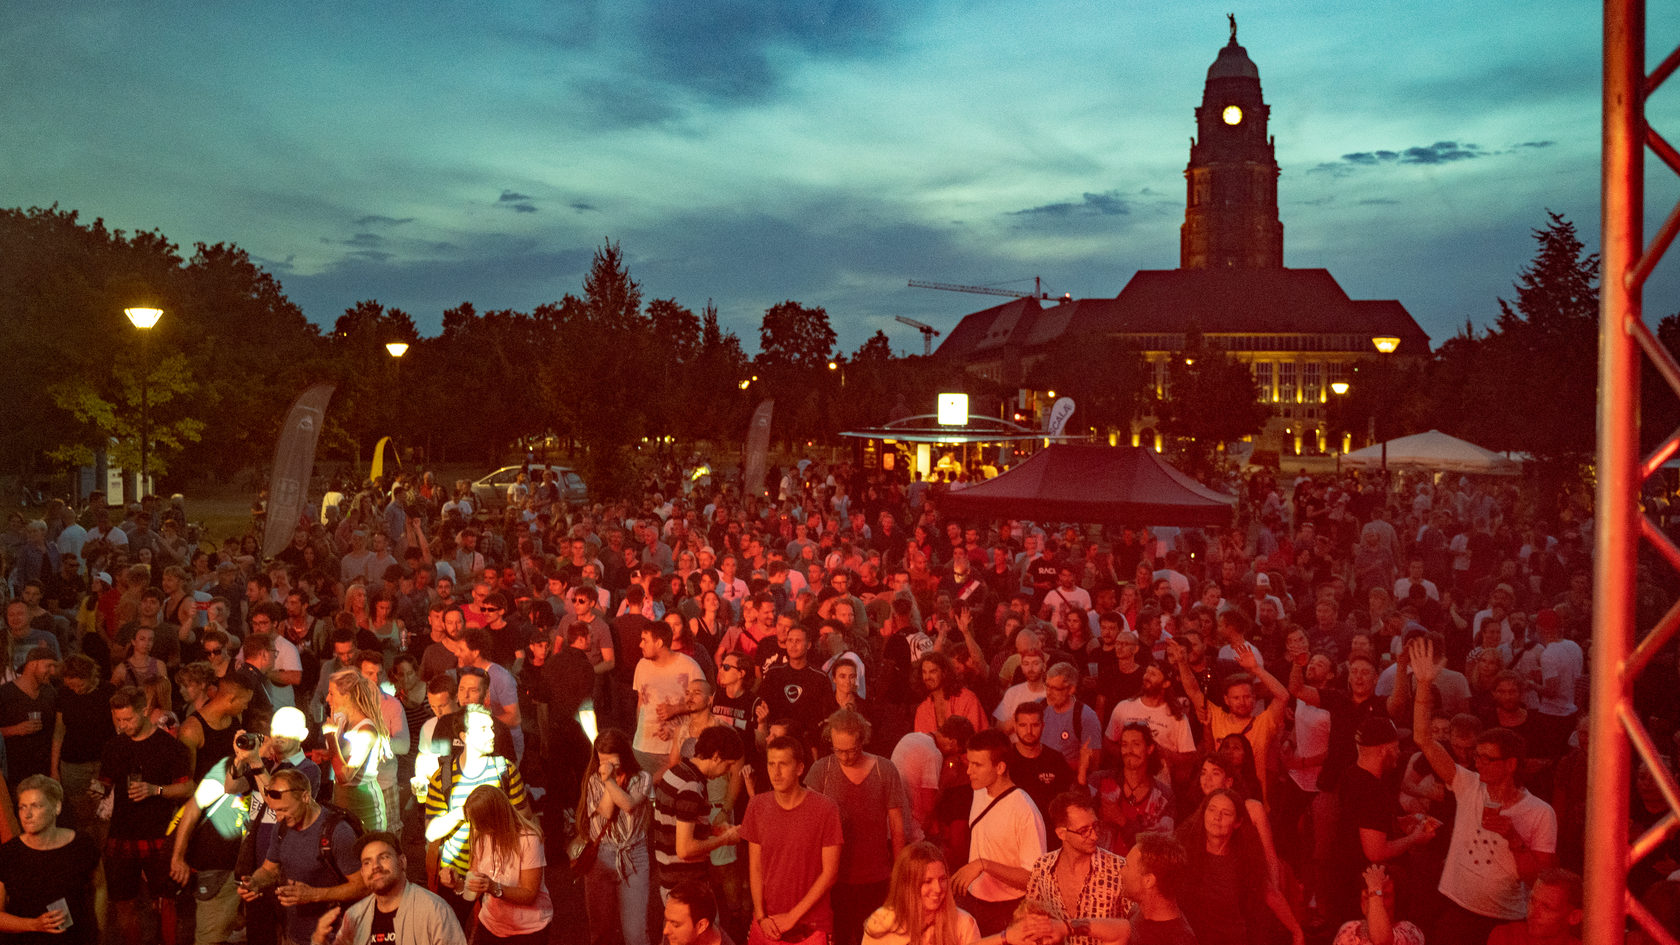 Blick auf das feiernde Publikum bei der Dresden Urban Dance Experience, im Hintergrund der Dresdner Rathausturm.